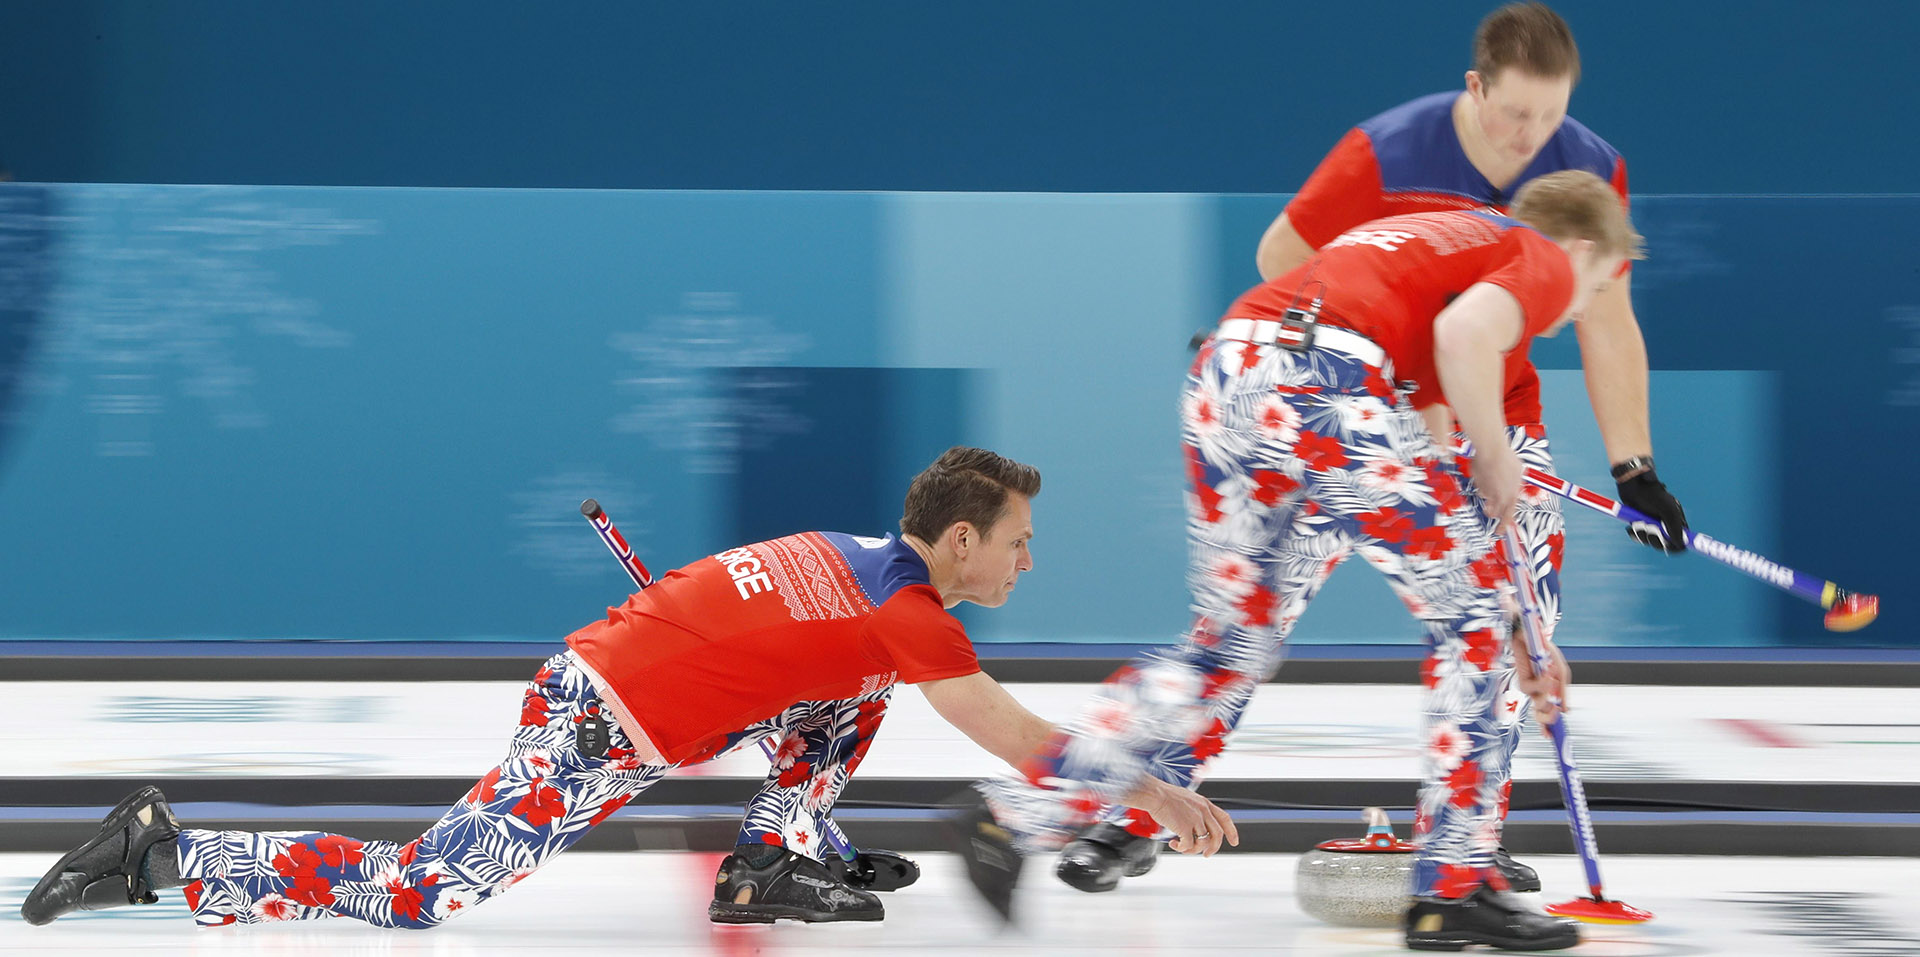 Los pantalones noruegos se apagan mientras el curling despierta la curiosidad de los chinos